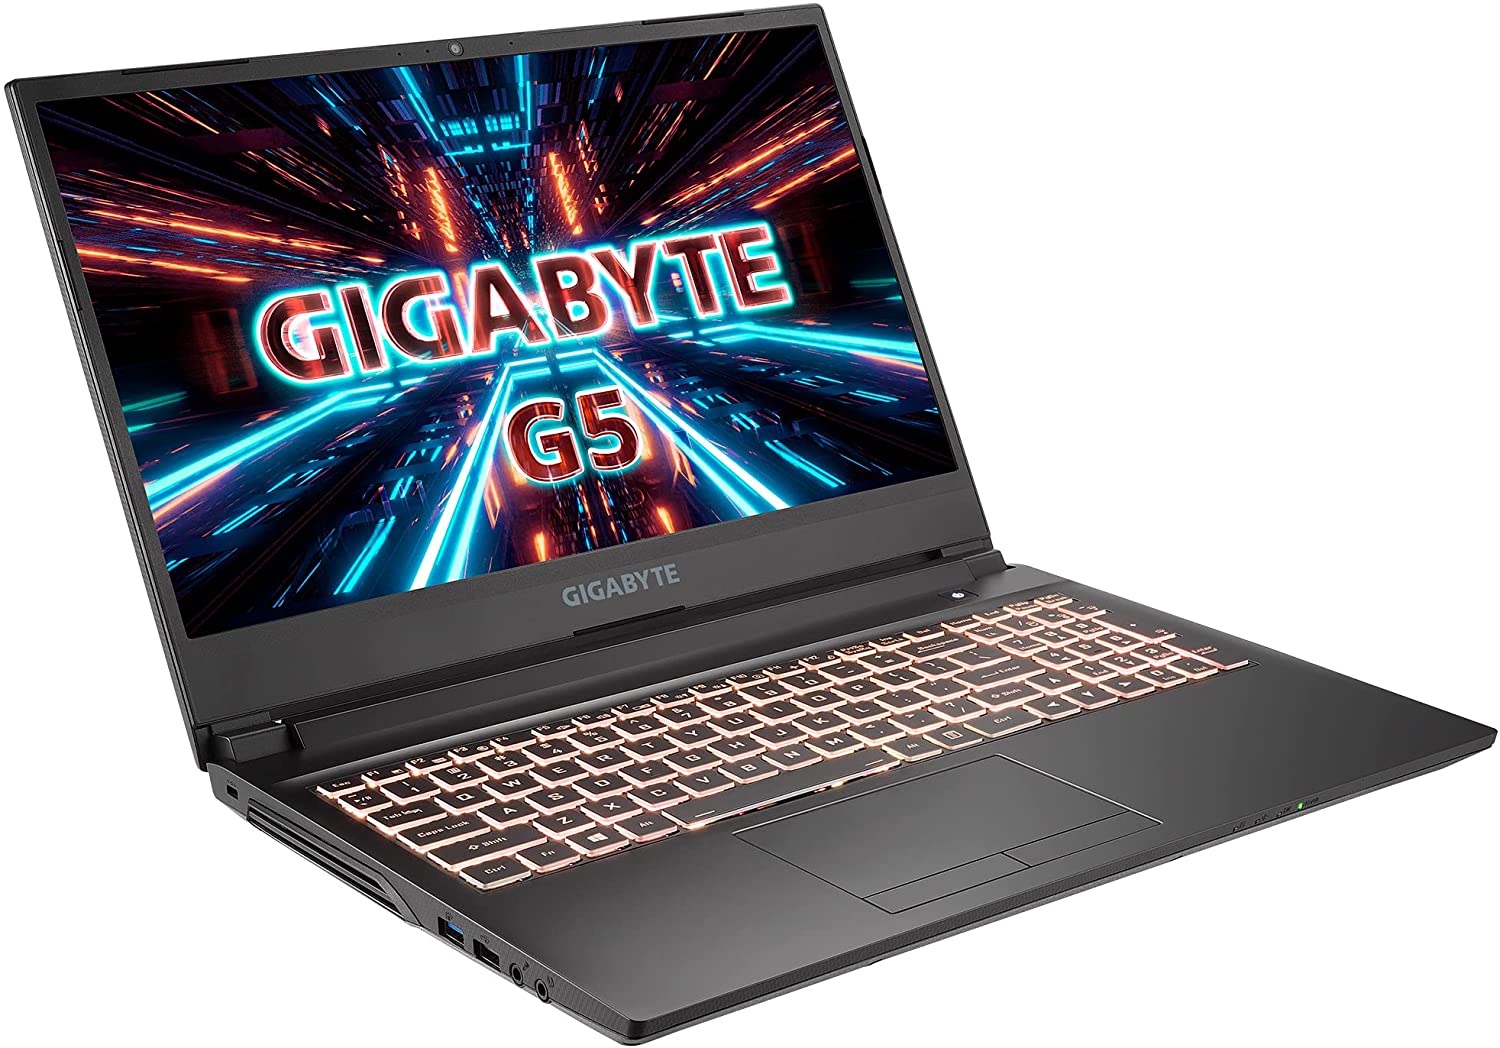 SATILIK - Gigabyte RTX 3060 Laptop - SIFIR KAPALI KUTU - İNDİRİM!!! |  DonanımHaber Forum